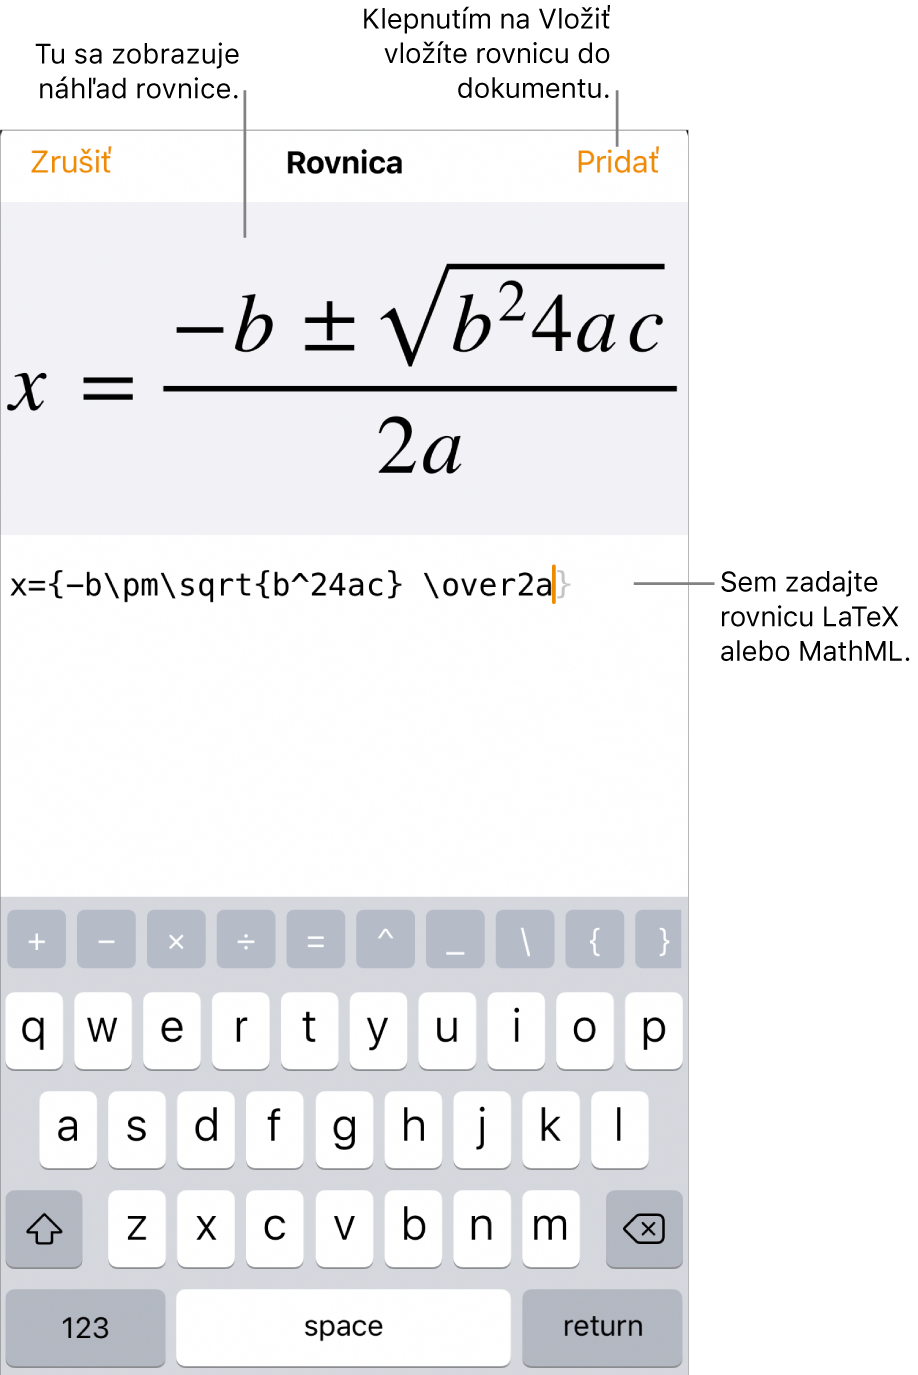 Dialógové okno Rovnica zobrazujúce kvadratickú rovnicu napísanú pomocou príkazov LaTeX, vyššie sa nachádza náhľad vzorca.